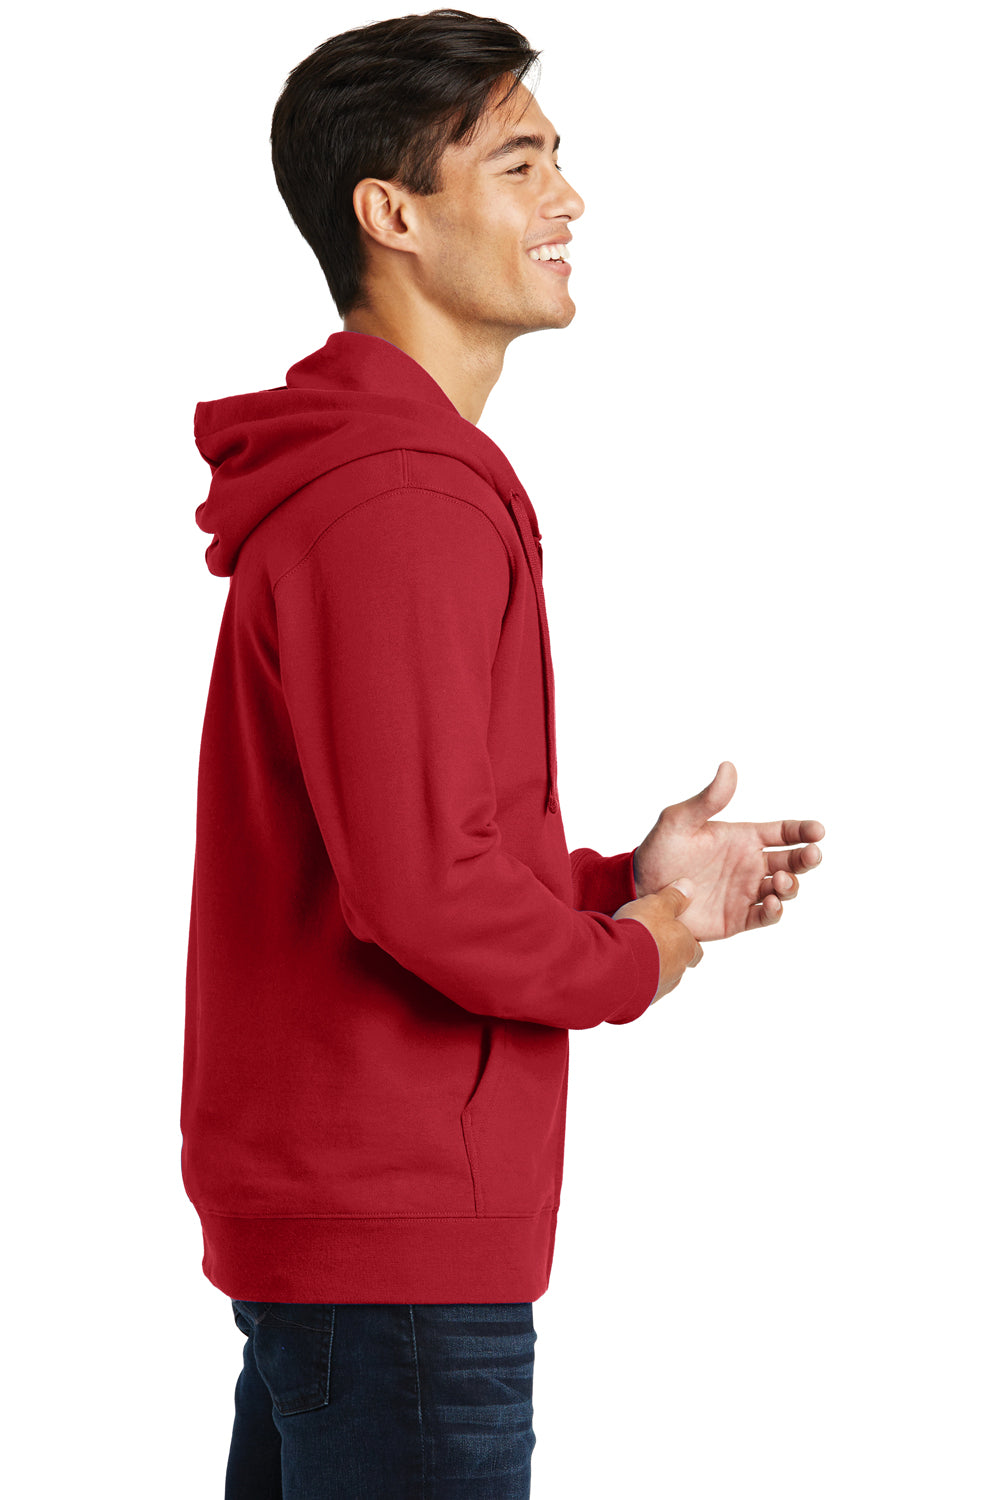 Port & Company PC850ZH Mens Fan Favorite Fleece Full Zip Hooded Sweatshirt Hoodie Cardinal Red Side